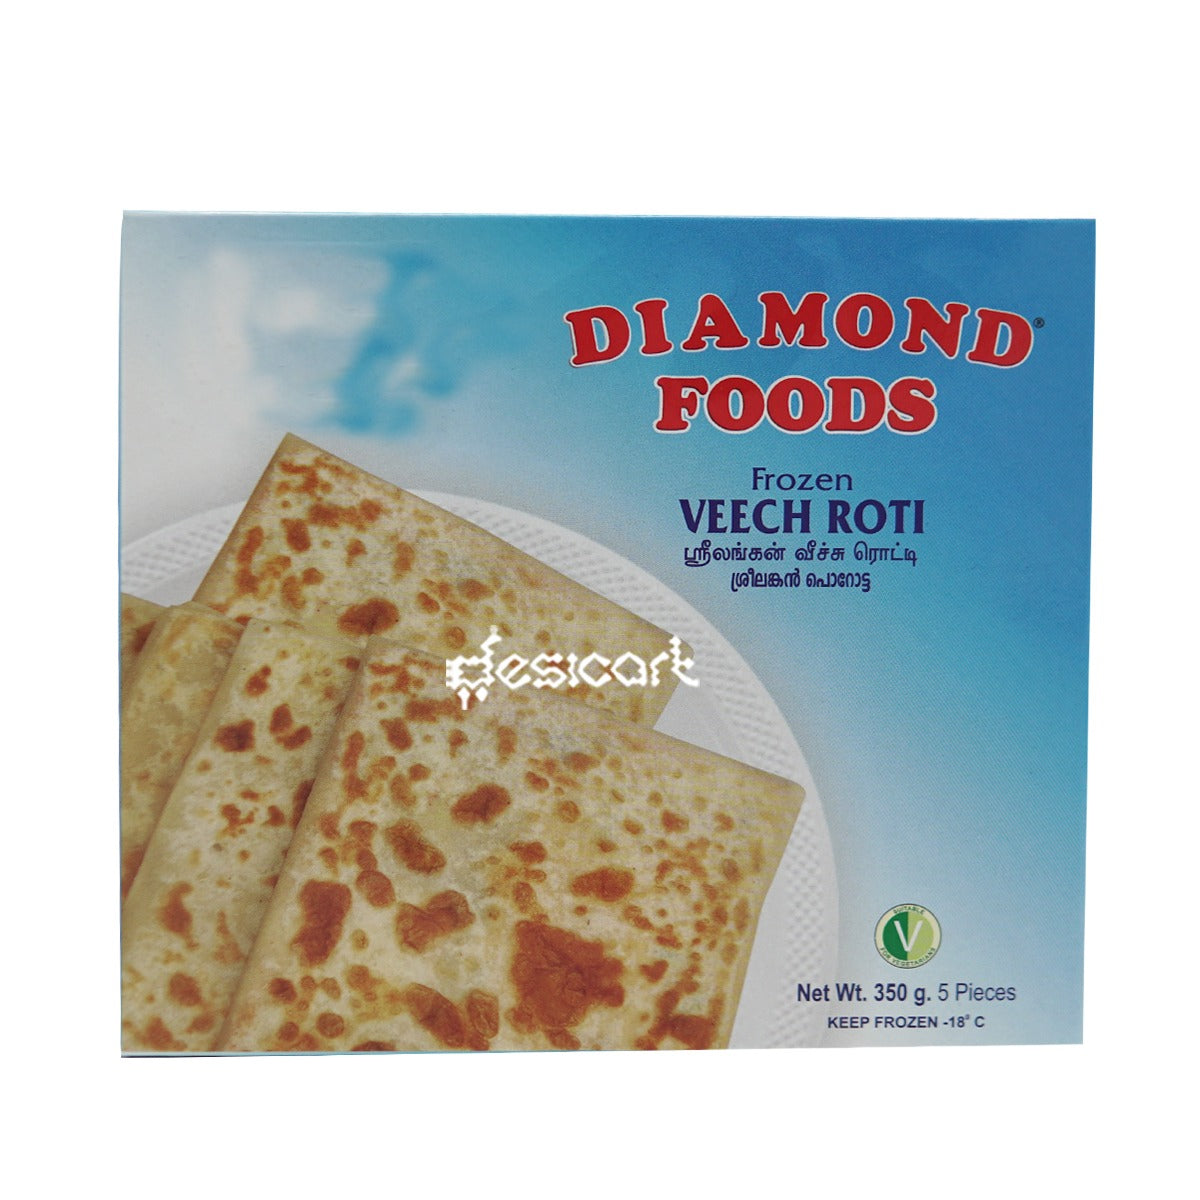 Diamond Veech Roti 350g Buy 1 Get 1 free